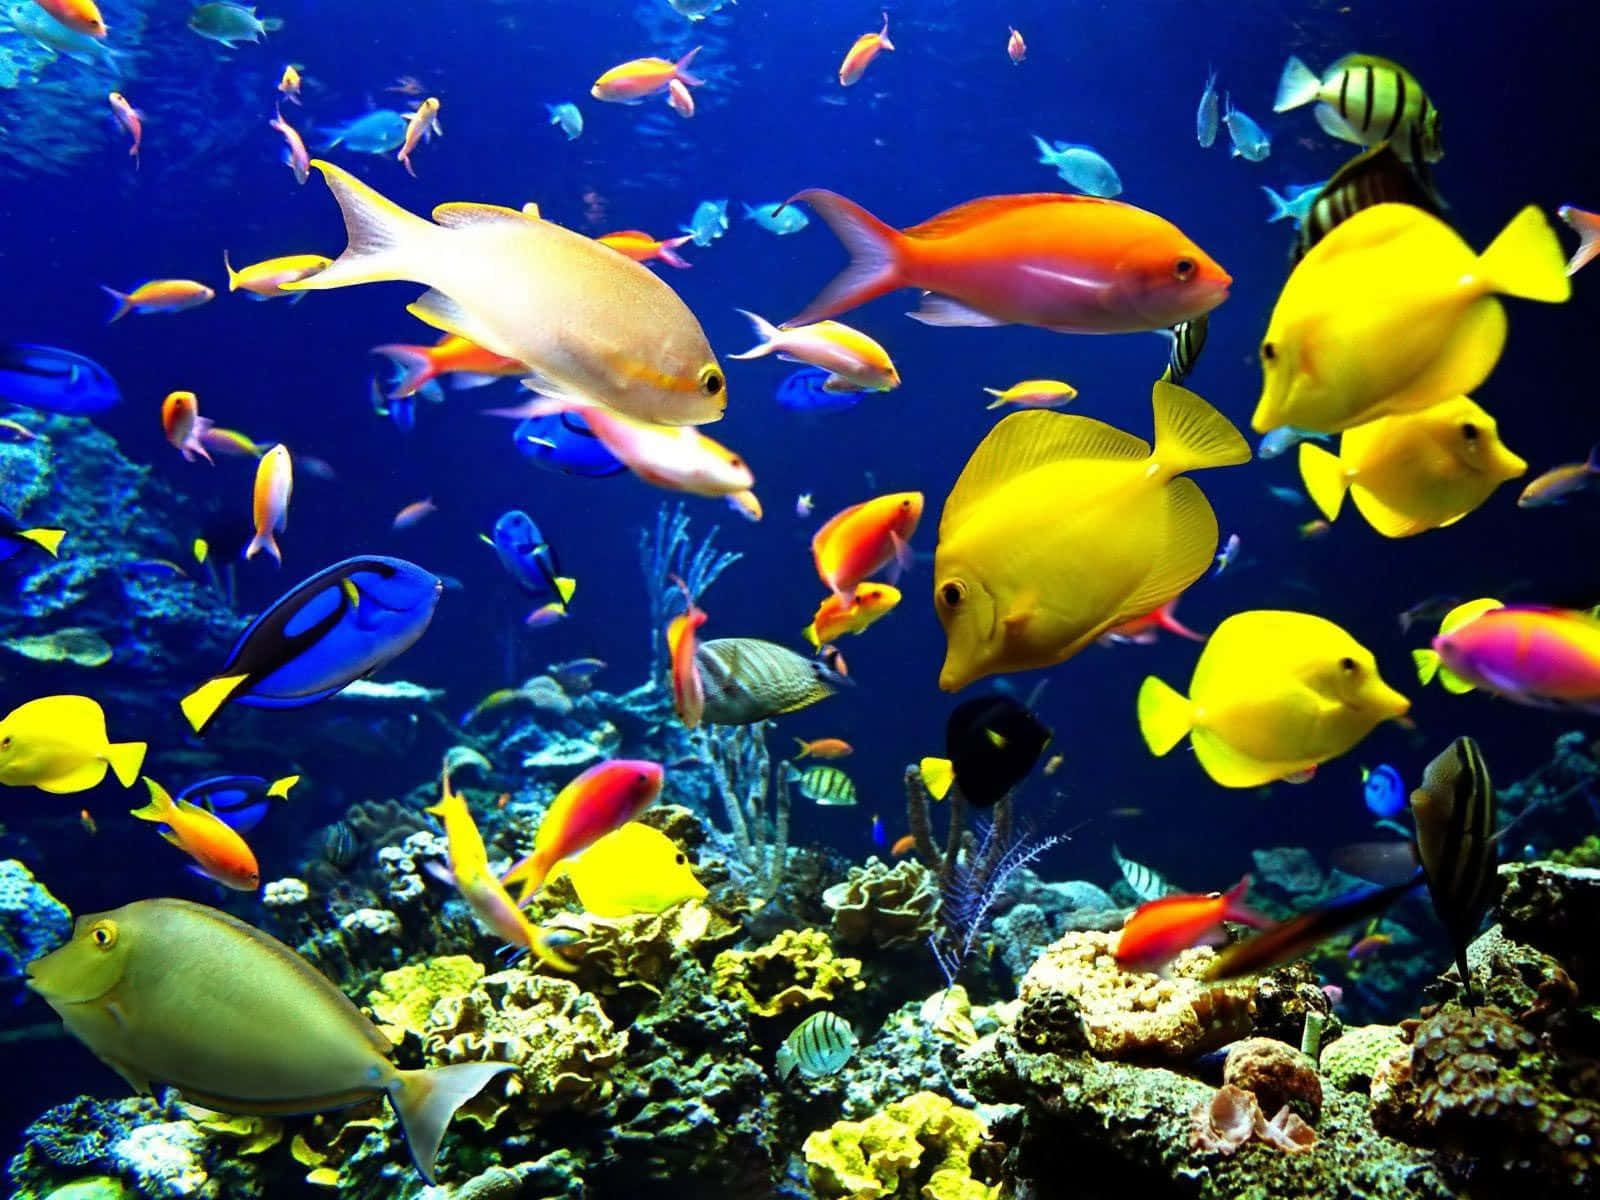 Live School Of Fish In The Ocean Reef Wallpaper